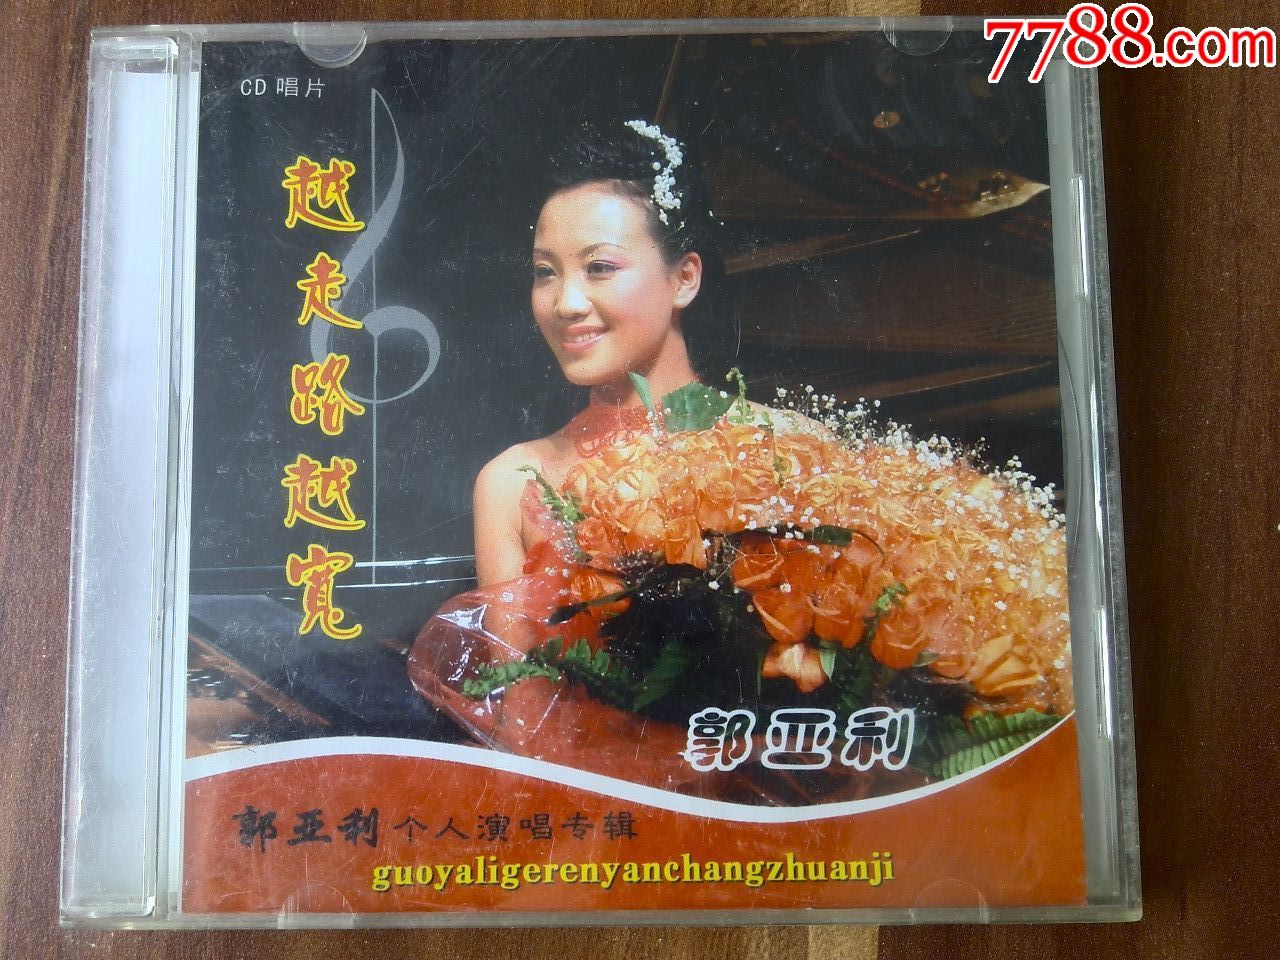 内蒙古青年歌手郭亚利演唱专辑《越走路越宽》